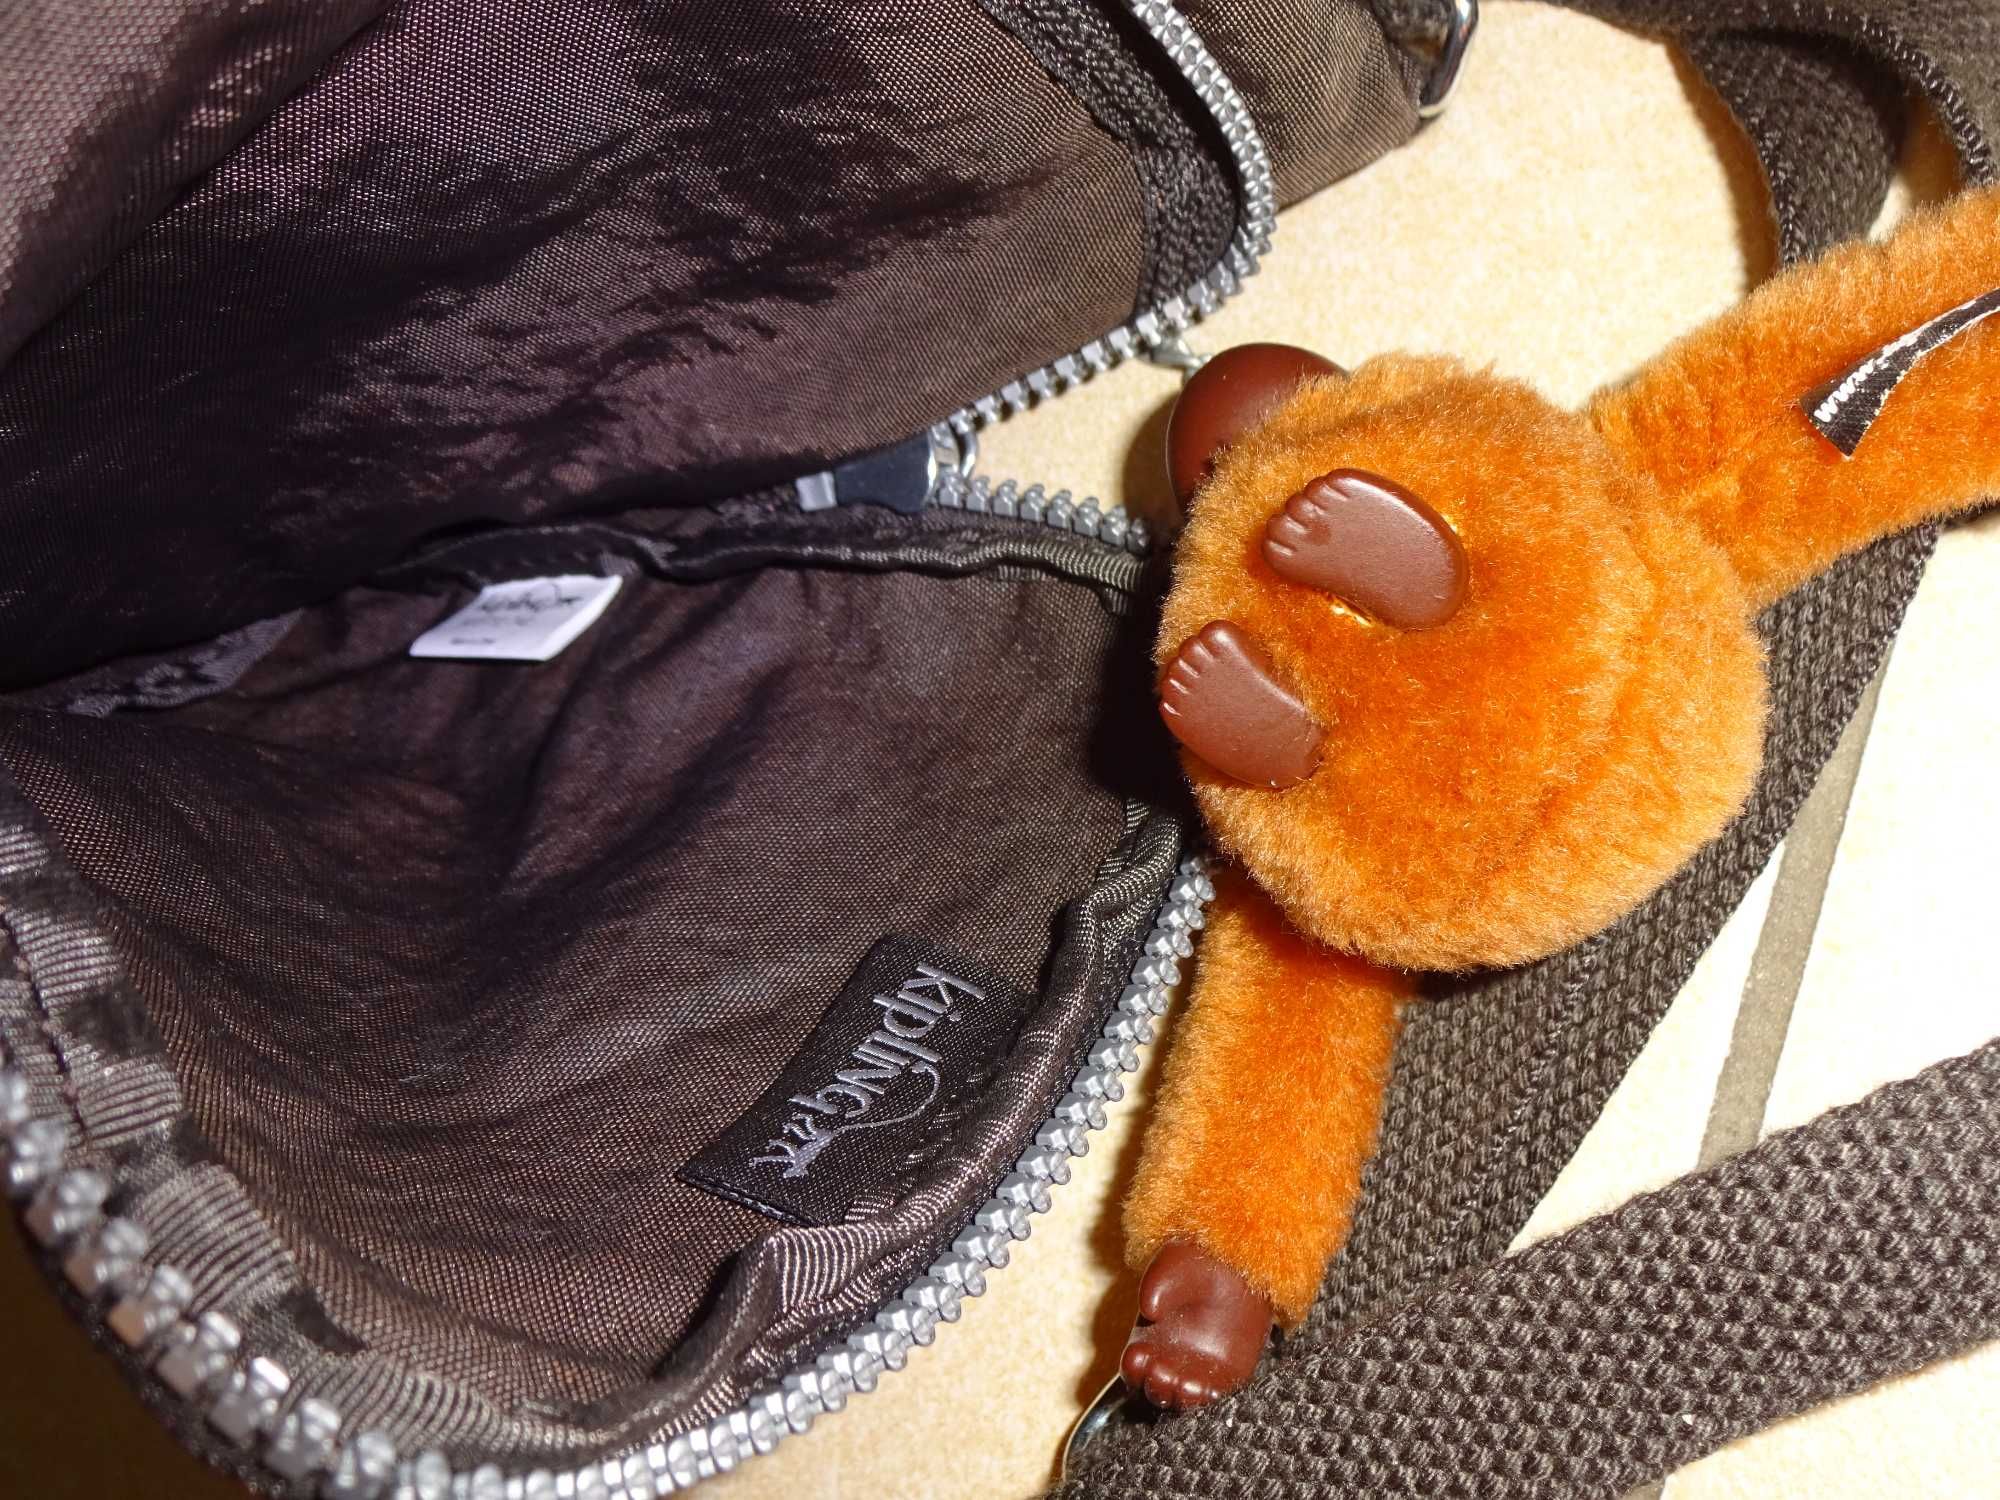 KIPLING oryginalna pojemna brązowa listonoszka torebka z małpką